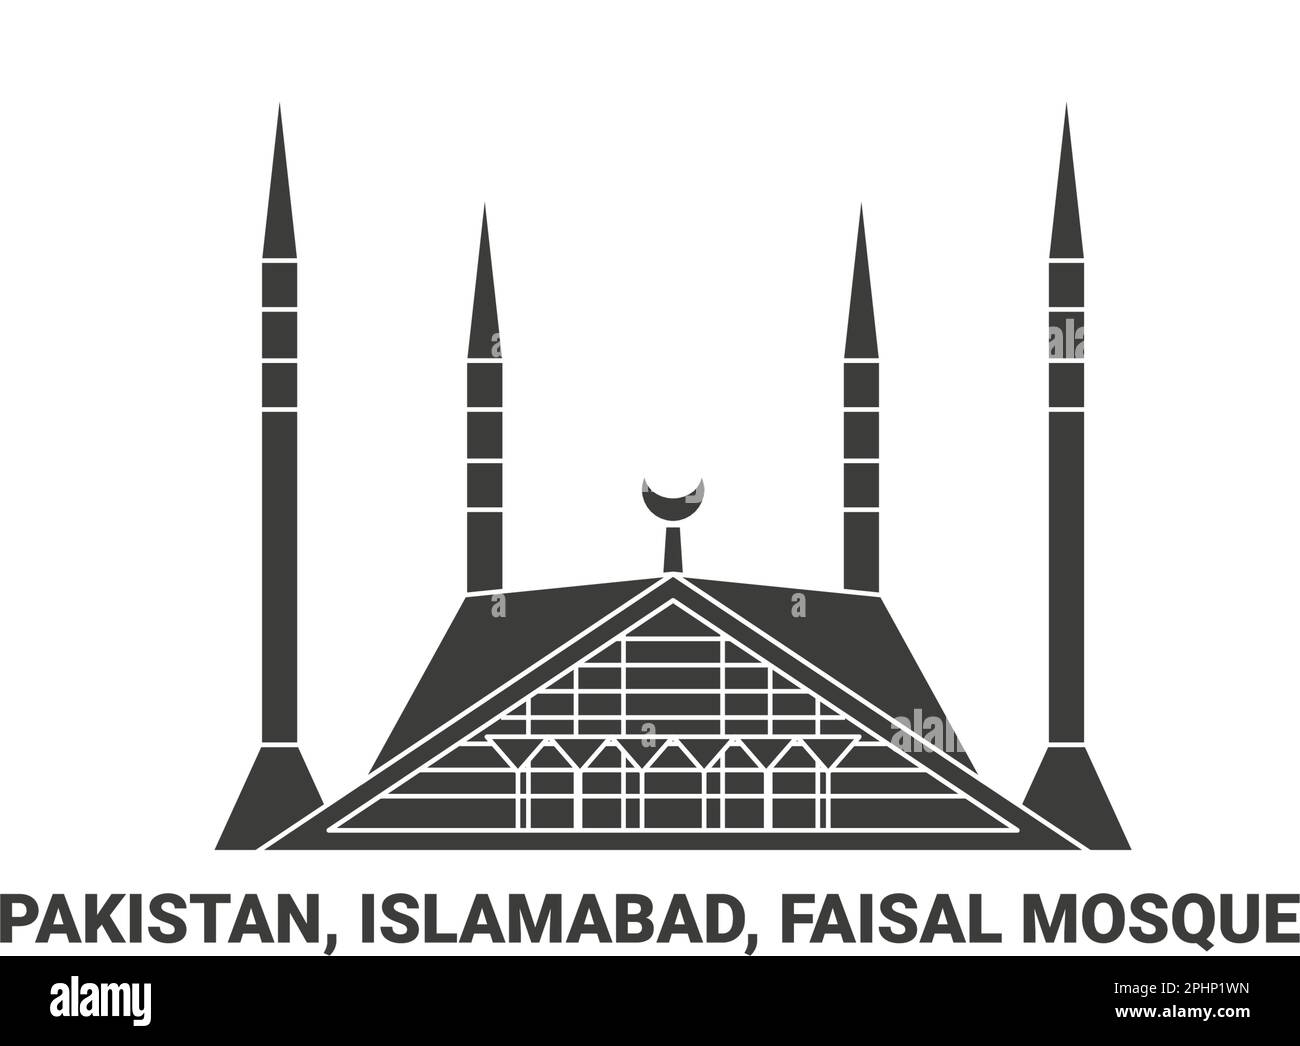 Pakistan, Islamabad, Faisal Mosque, travel landmark vector illustration Stock Vector